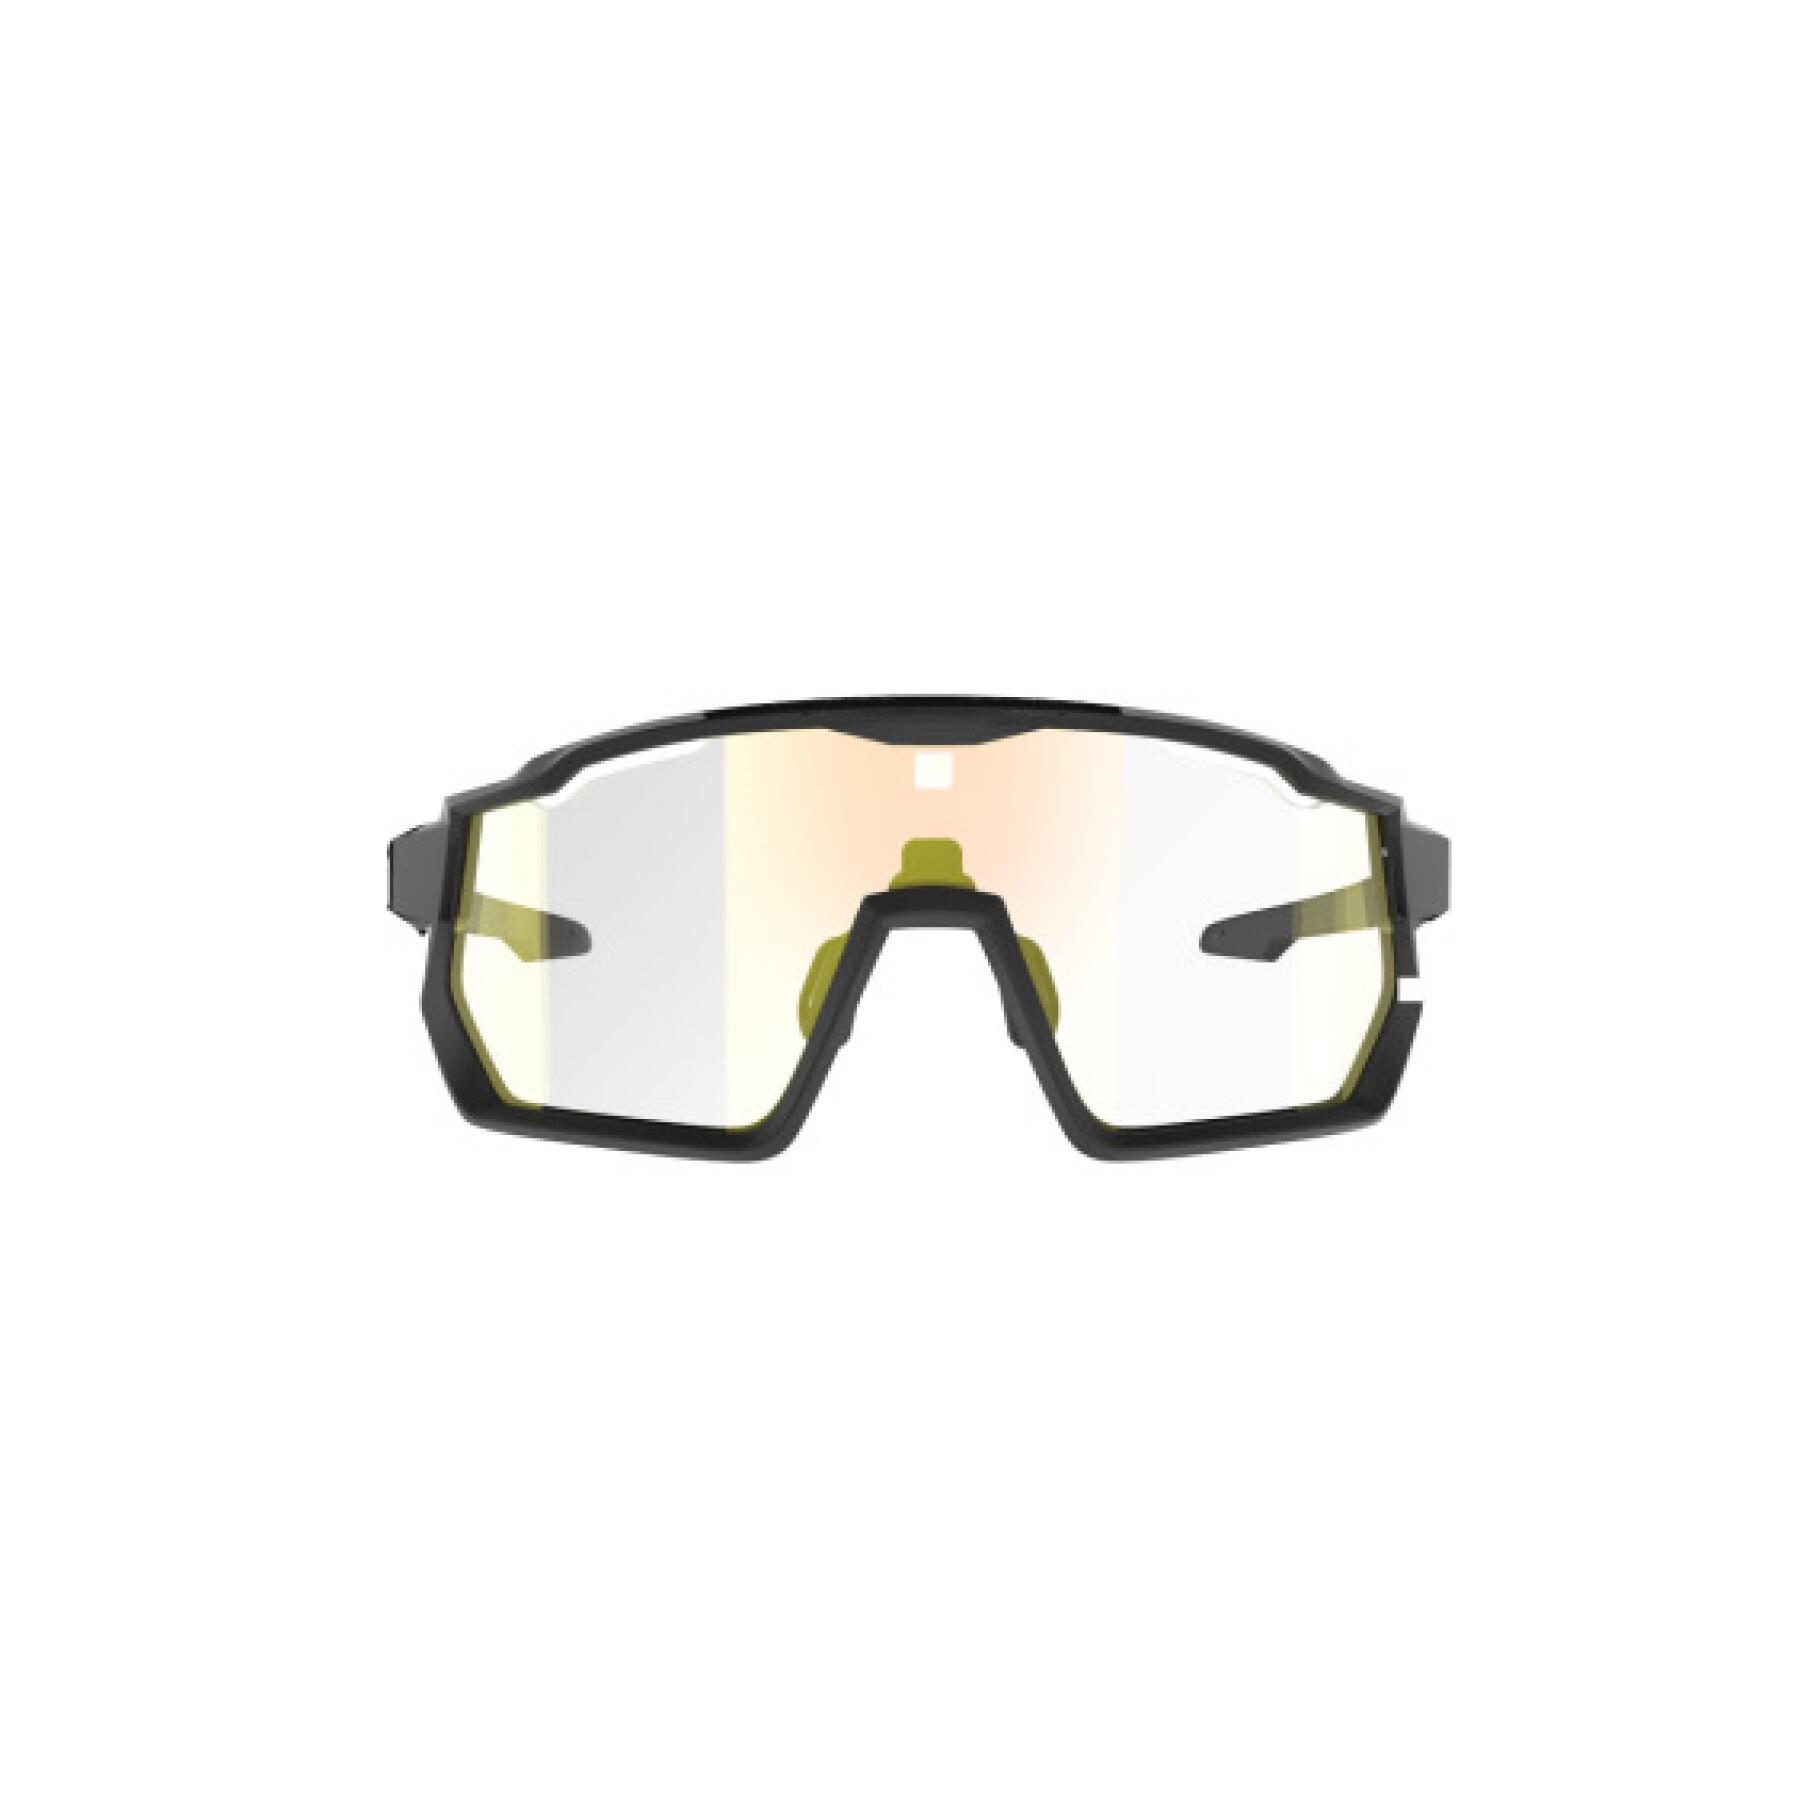 Brille mit irisierendem roten Bildschirm photochromatische Kategorie 0 bis 3 AZR Kromic Pro Race Rx